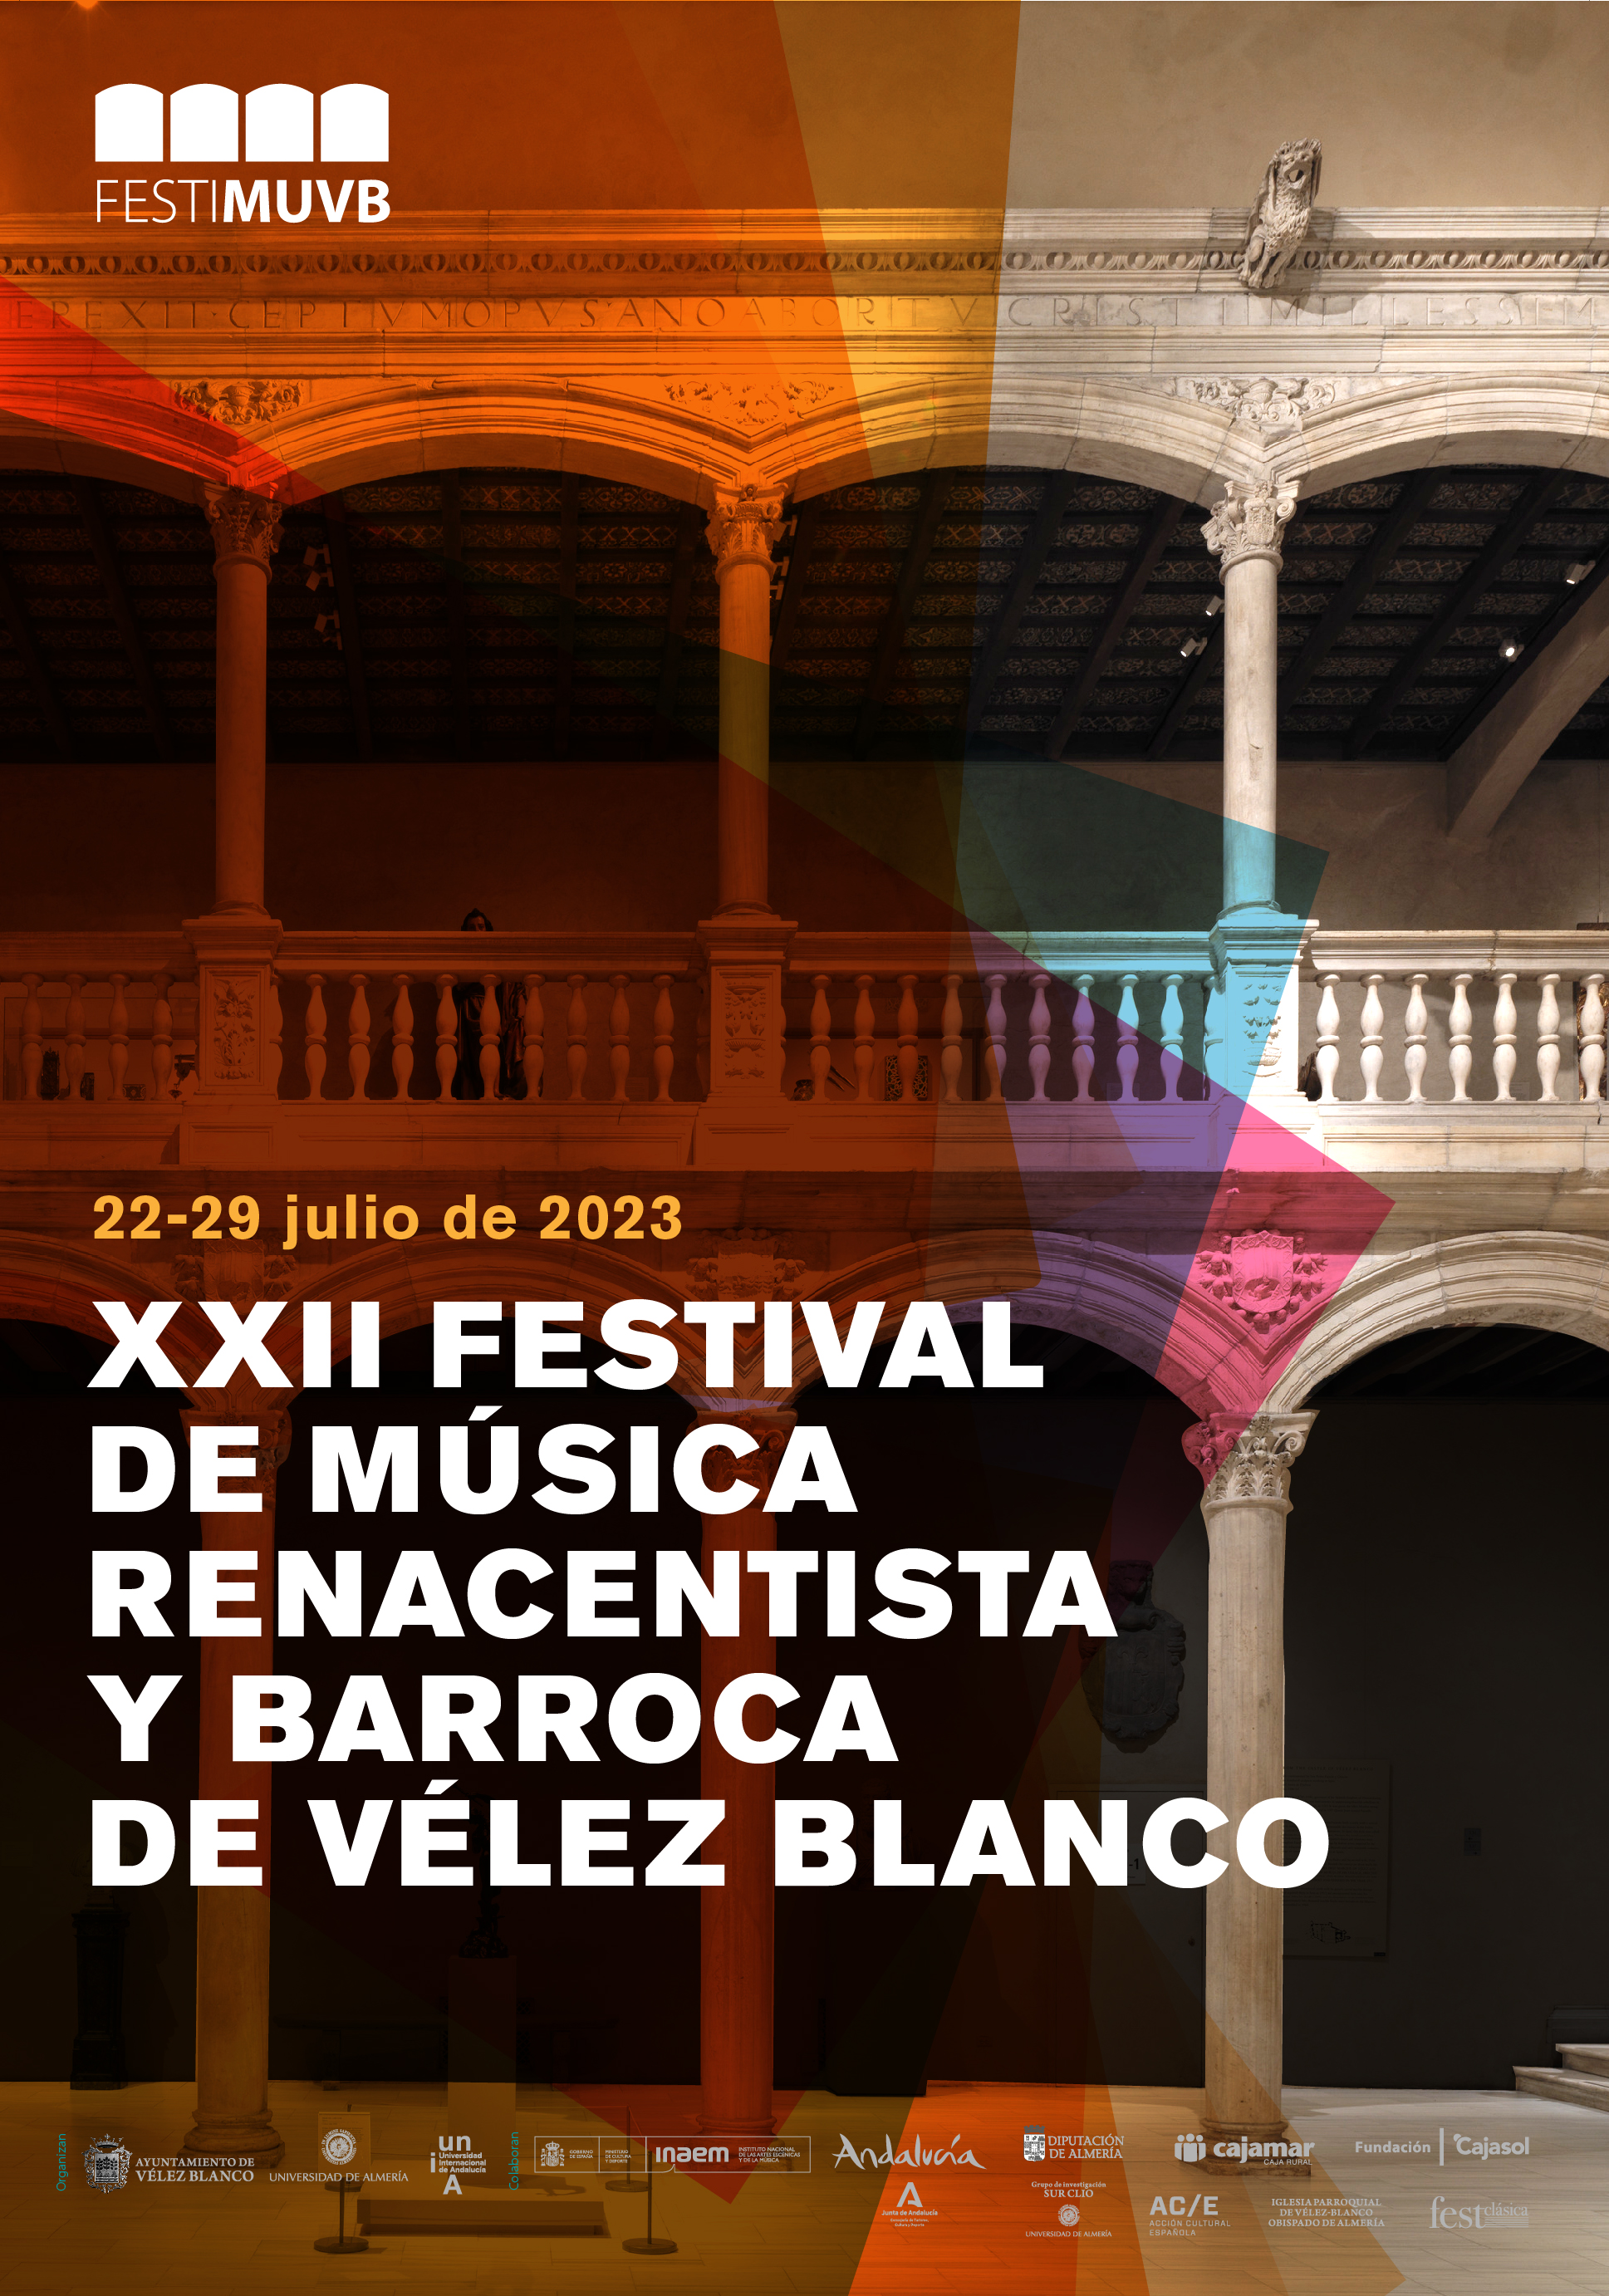 (c) Festivalvelezblanco.com